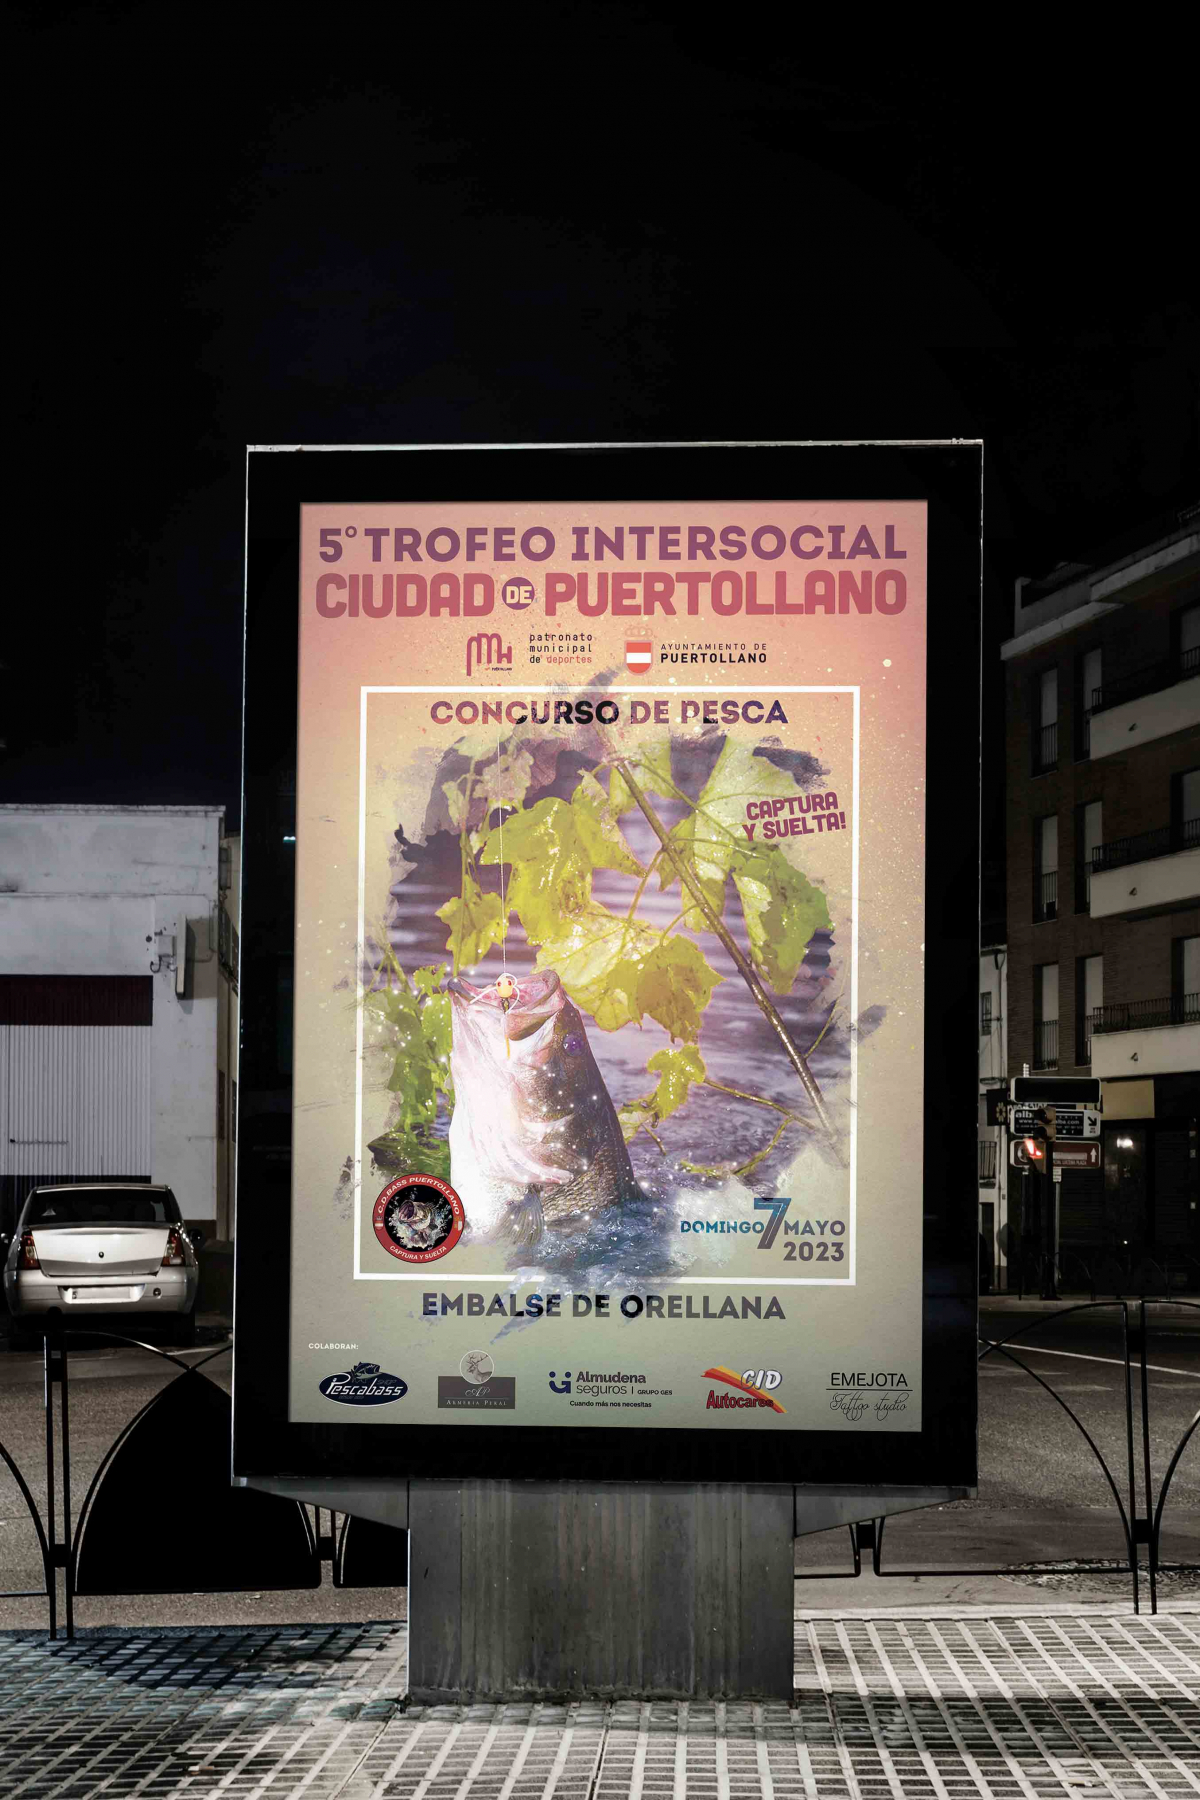 5º Trofeo Intersocial Ciudad de Puertollano de Pesca